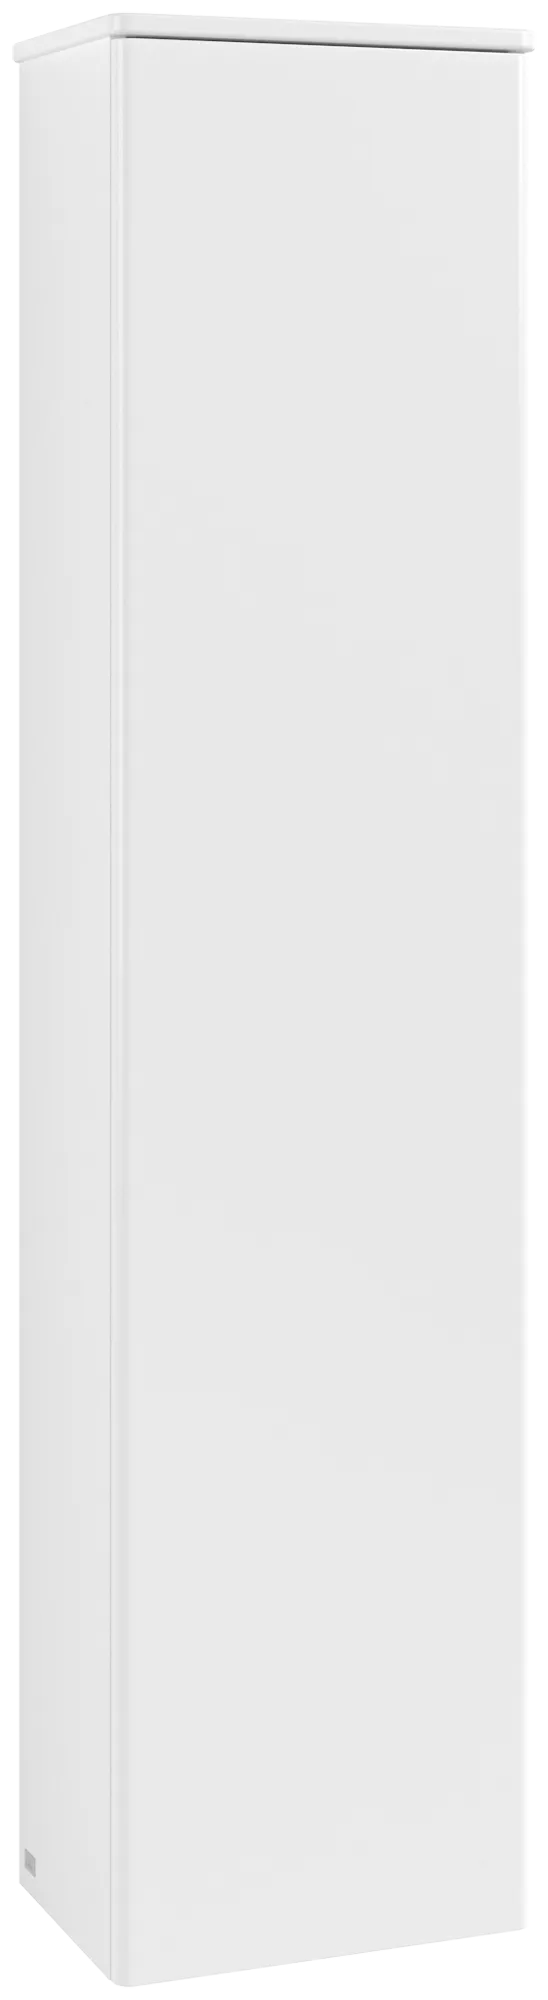 Bild von VILLEROY BOCH Antao Hochschrank, 1 Tür, 414 x 1719 x 287 mm, Front ohne Struktur, White Matt Lacquer / White Matt Lacquer #K46000MT